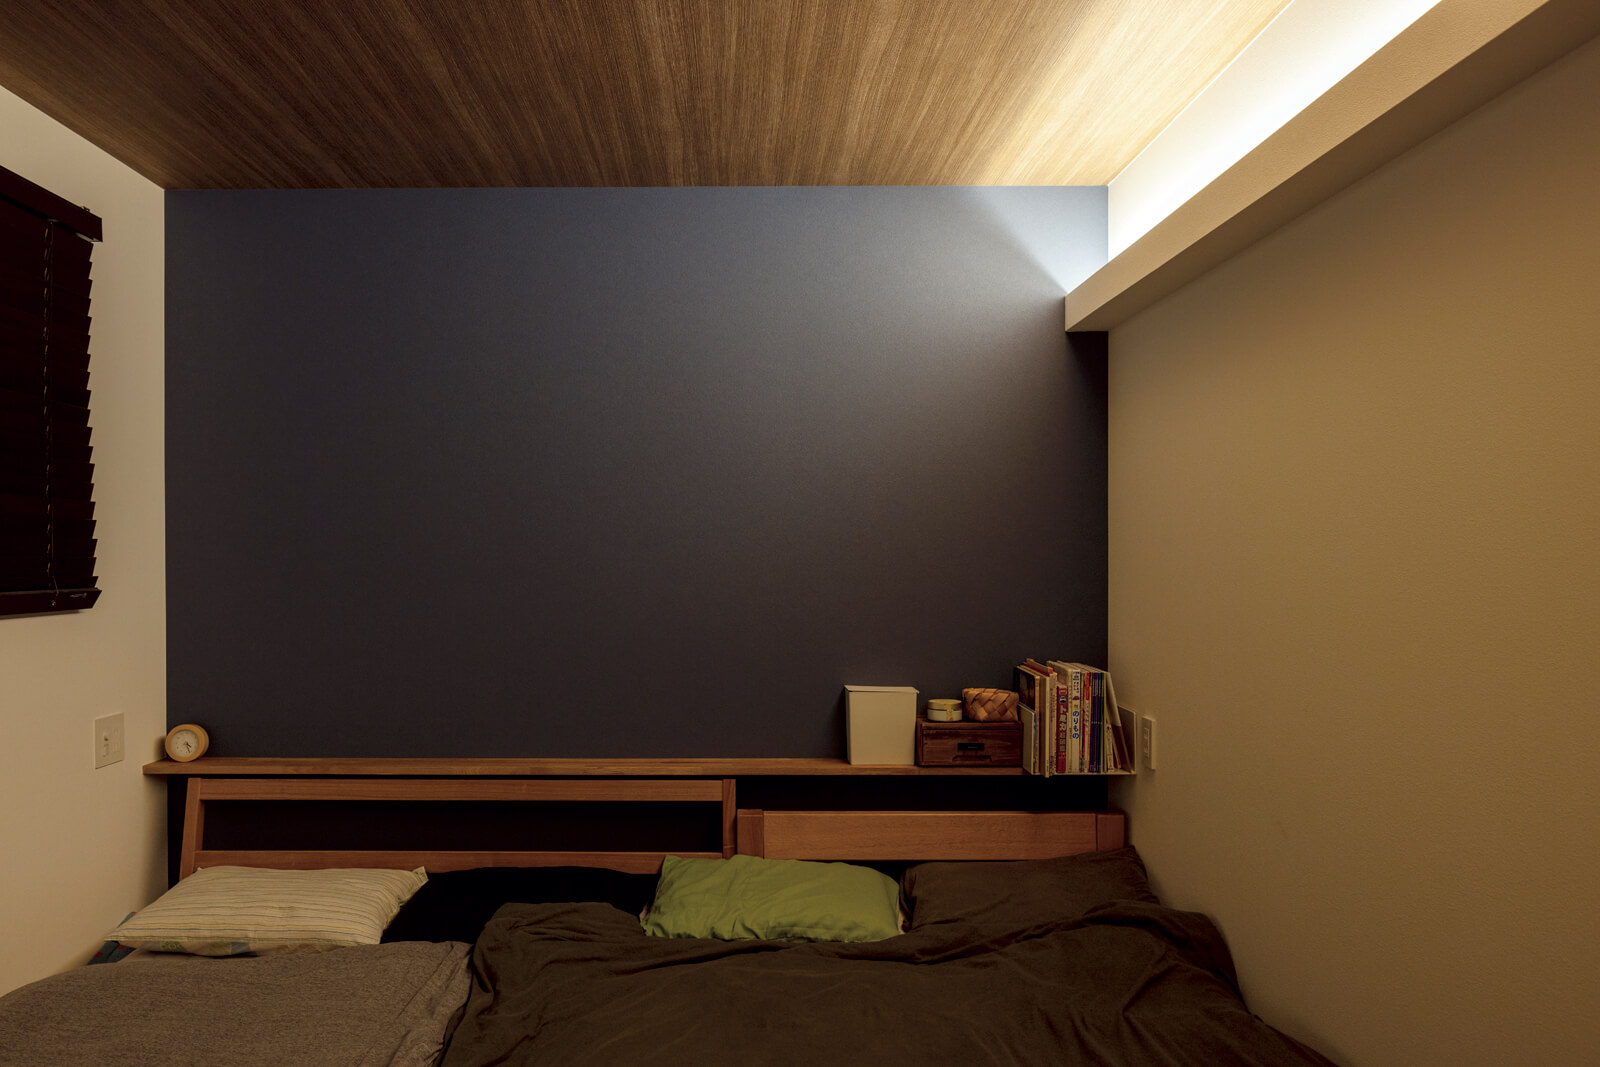 1階にある寝室は落ち着いた雰囲気を重視し間接照明のみに。ネイビーのアクセントクロスは2階のフリースペースとおそろい